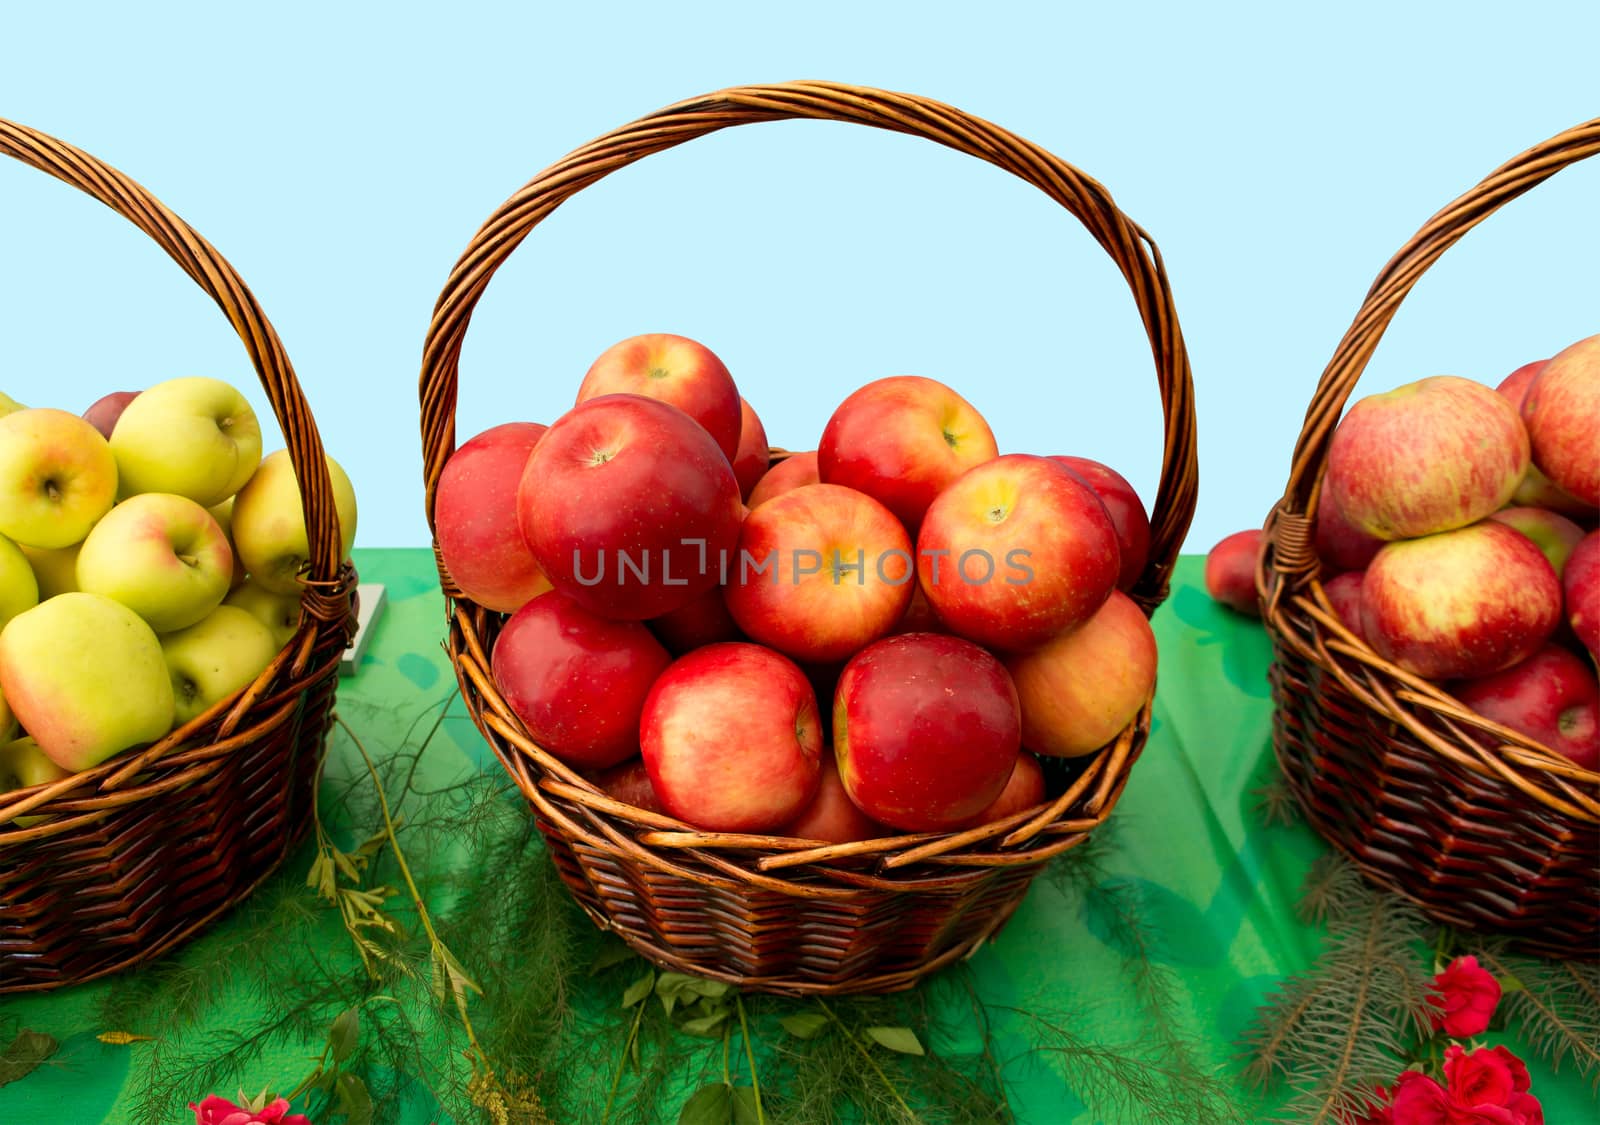 Apples in baskets by Venakr